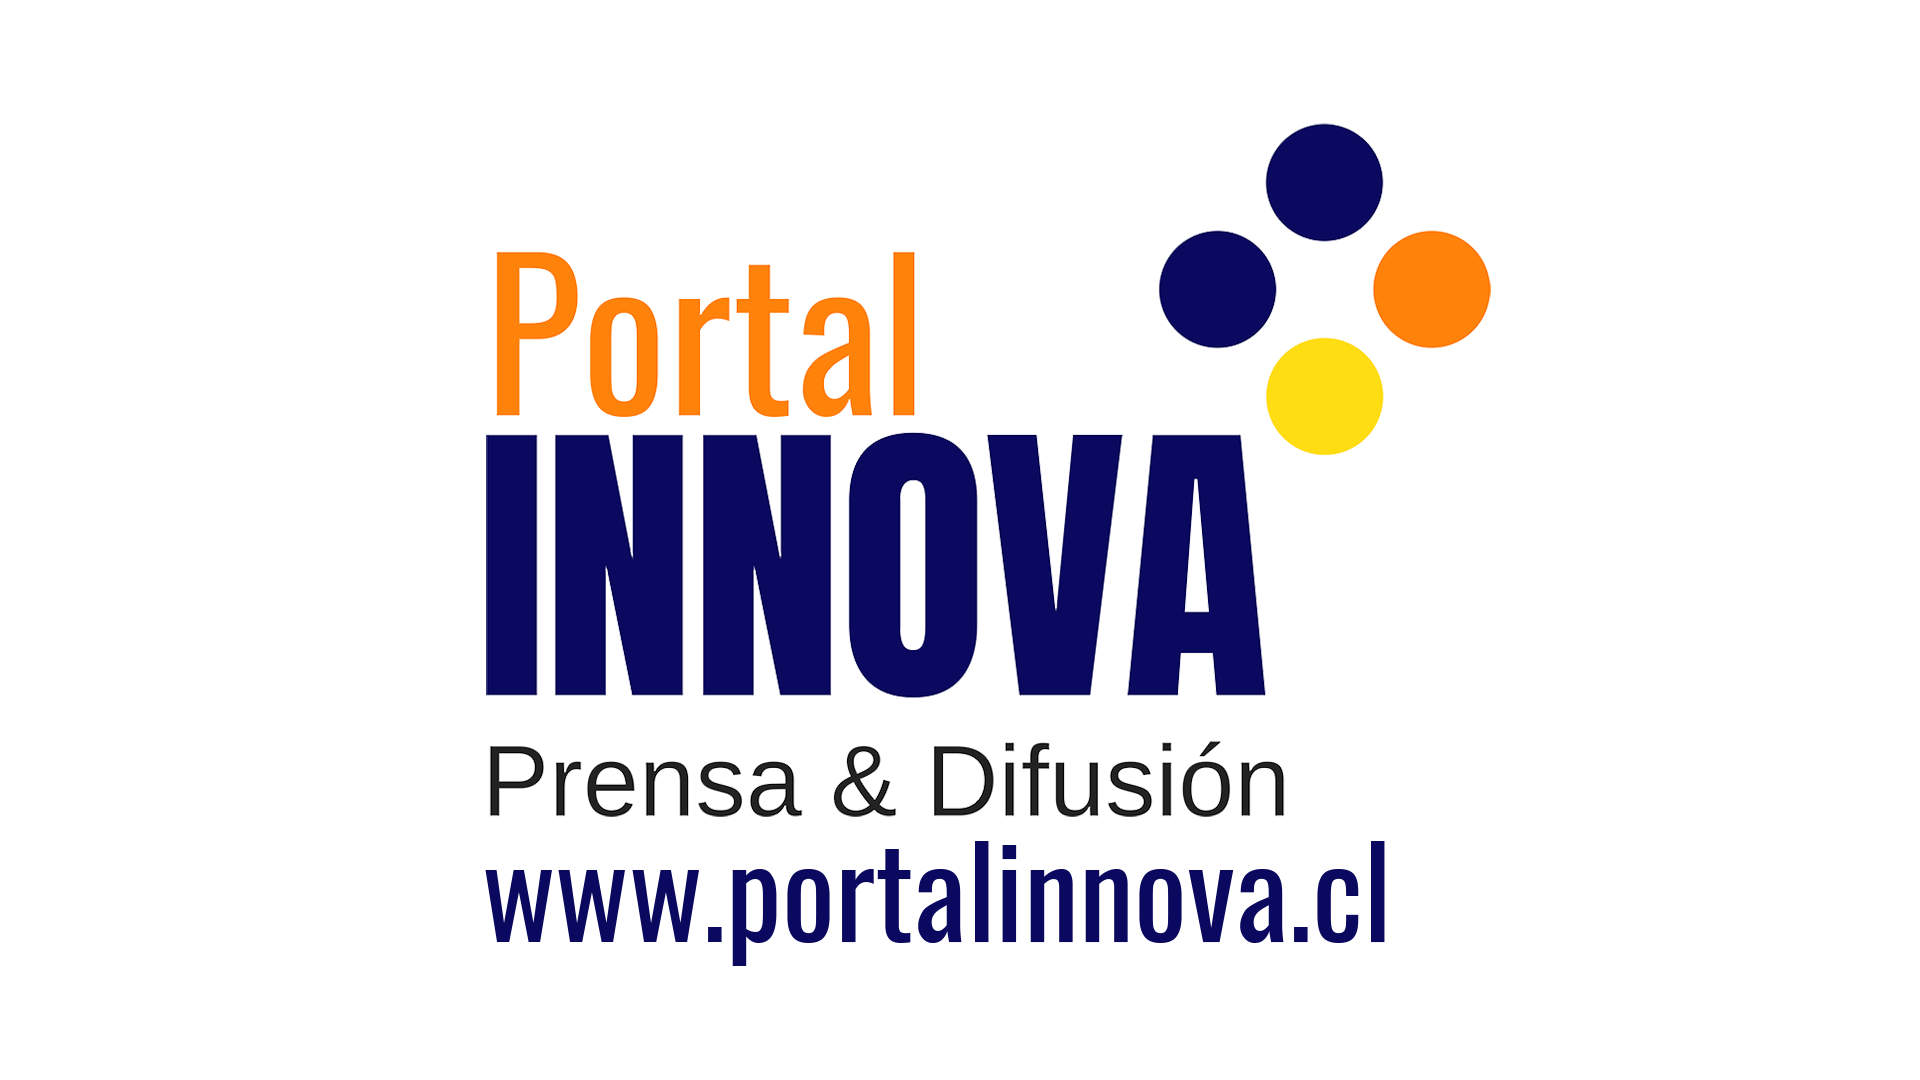 Portal Innova